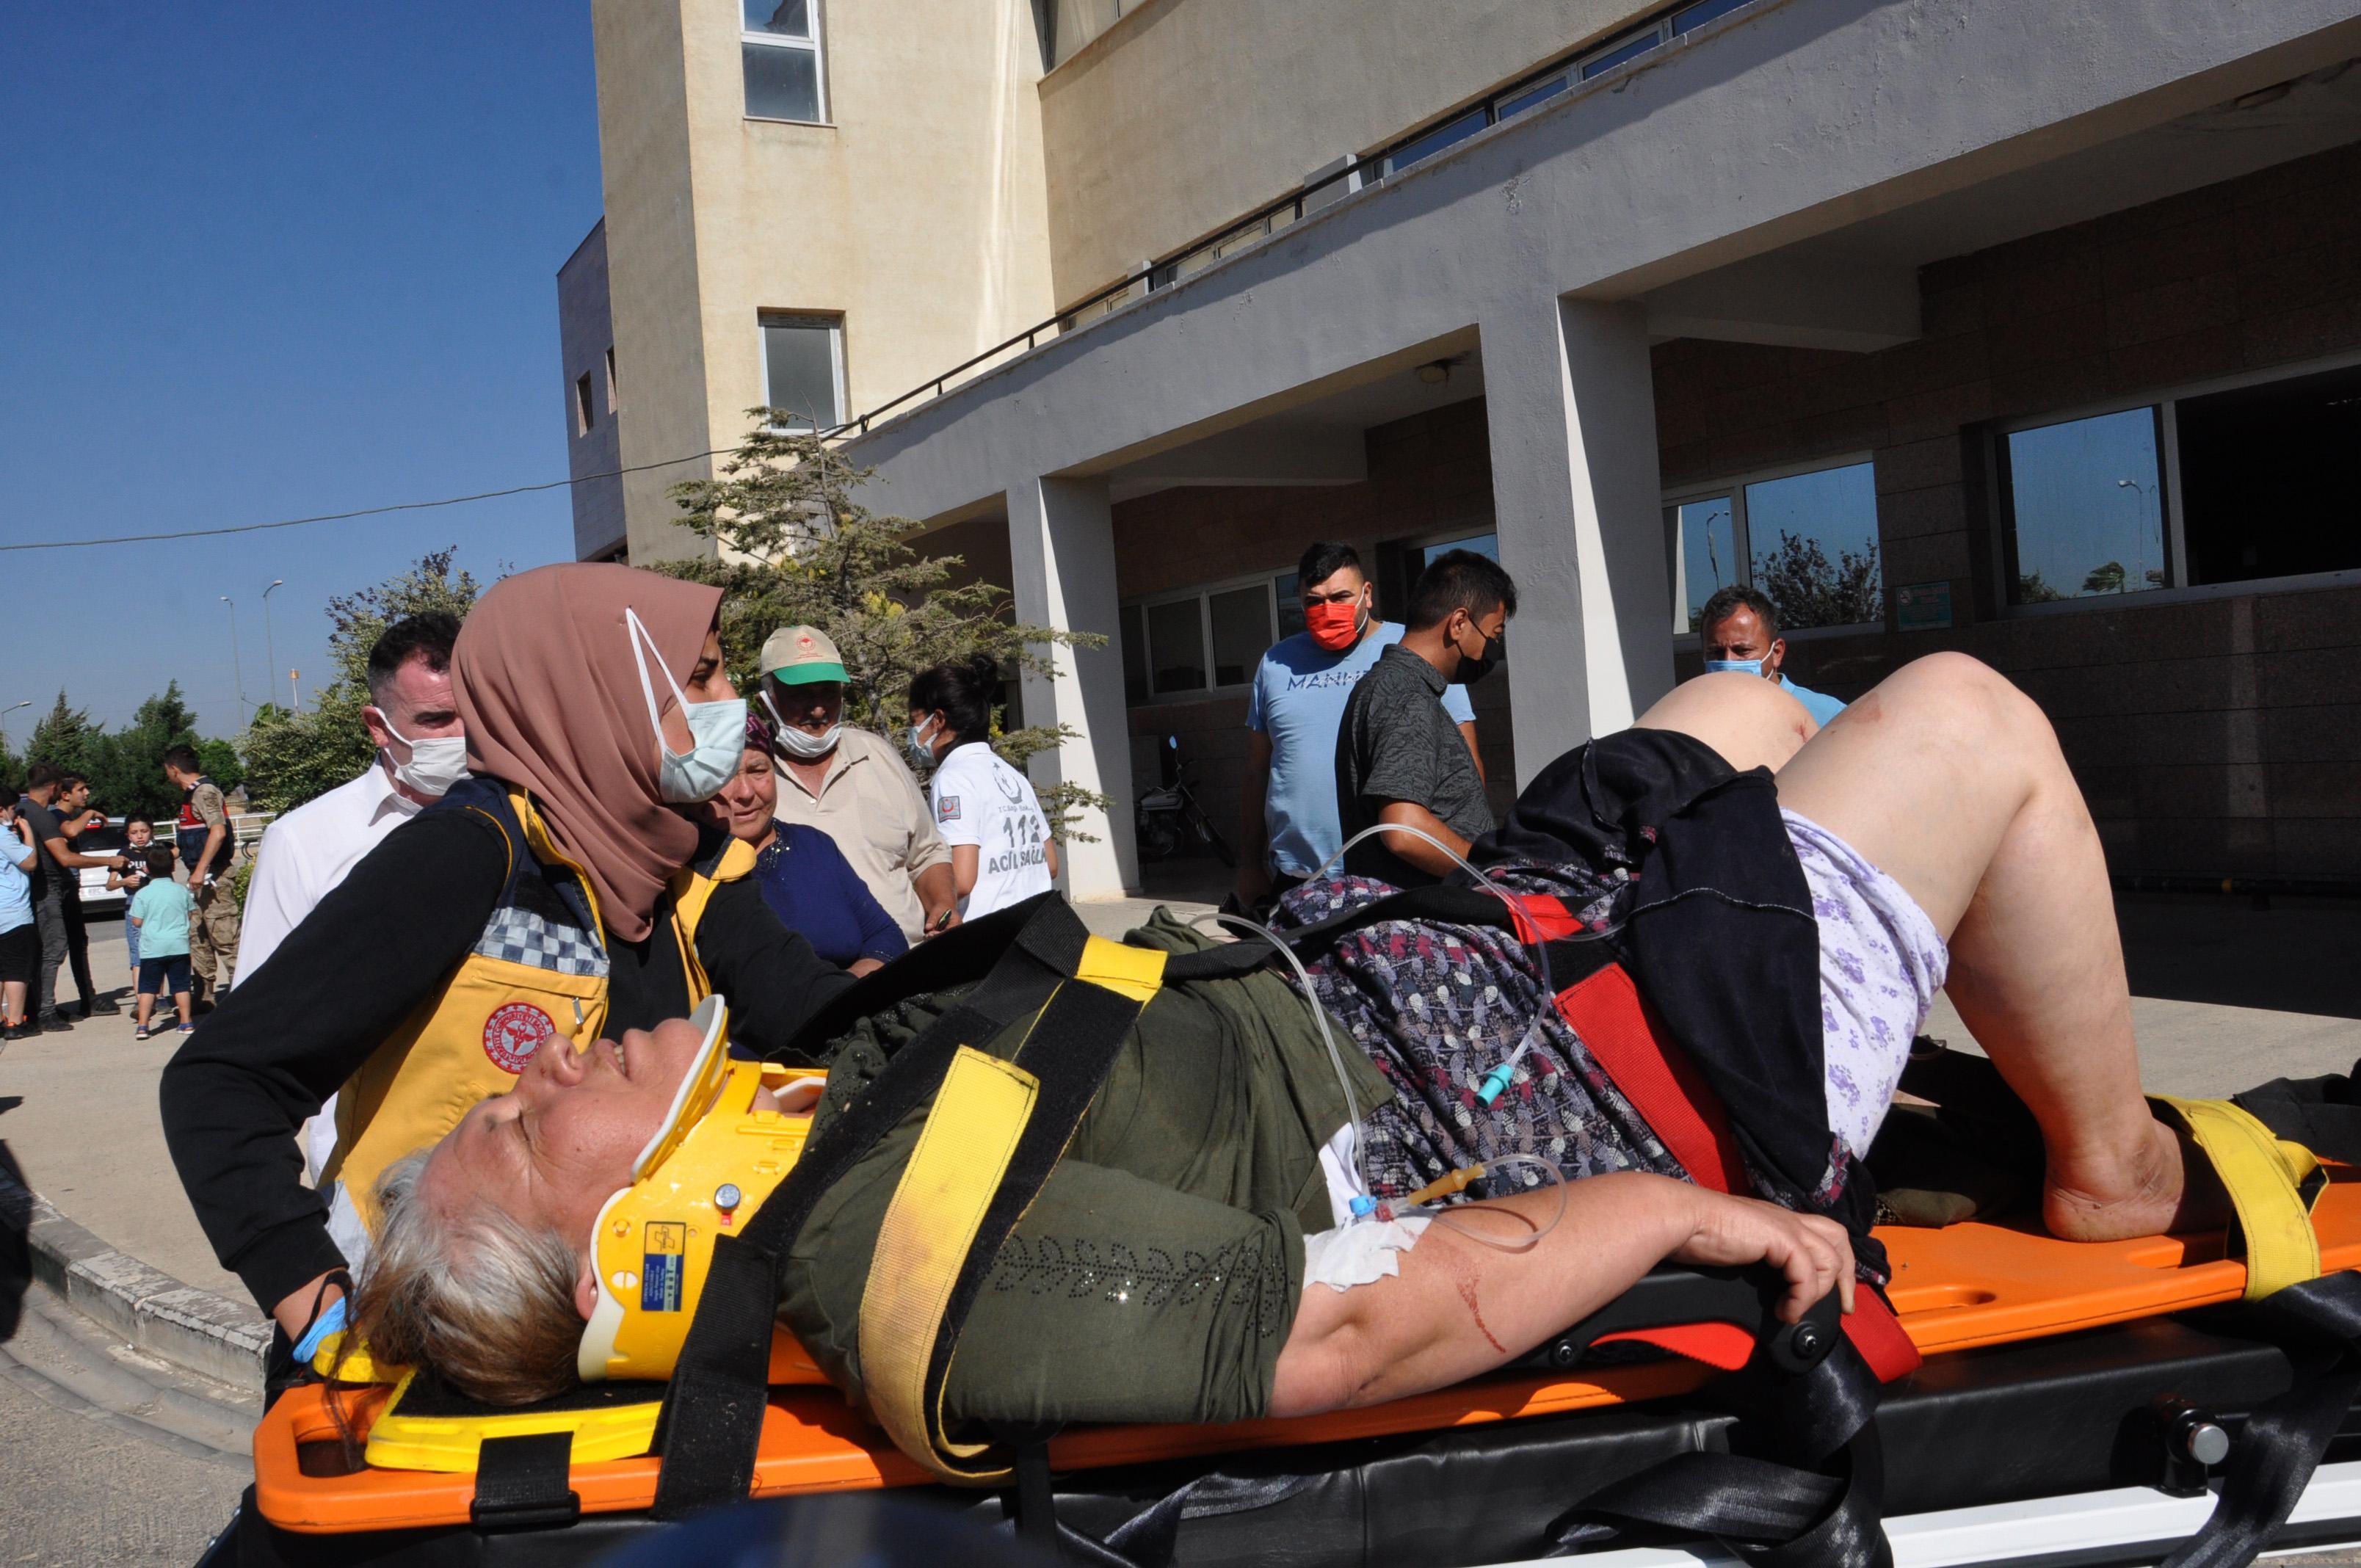 Gaziantep’te, kına gecesine gidenlerin bulunduğu araç devrildi: 10 yaralı